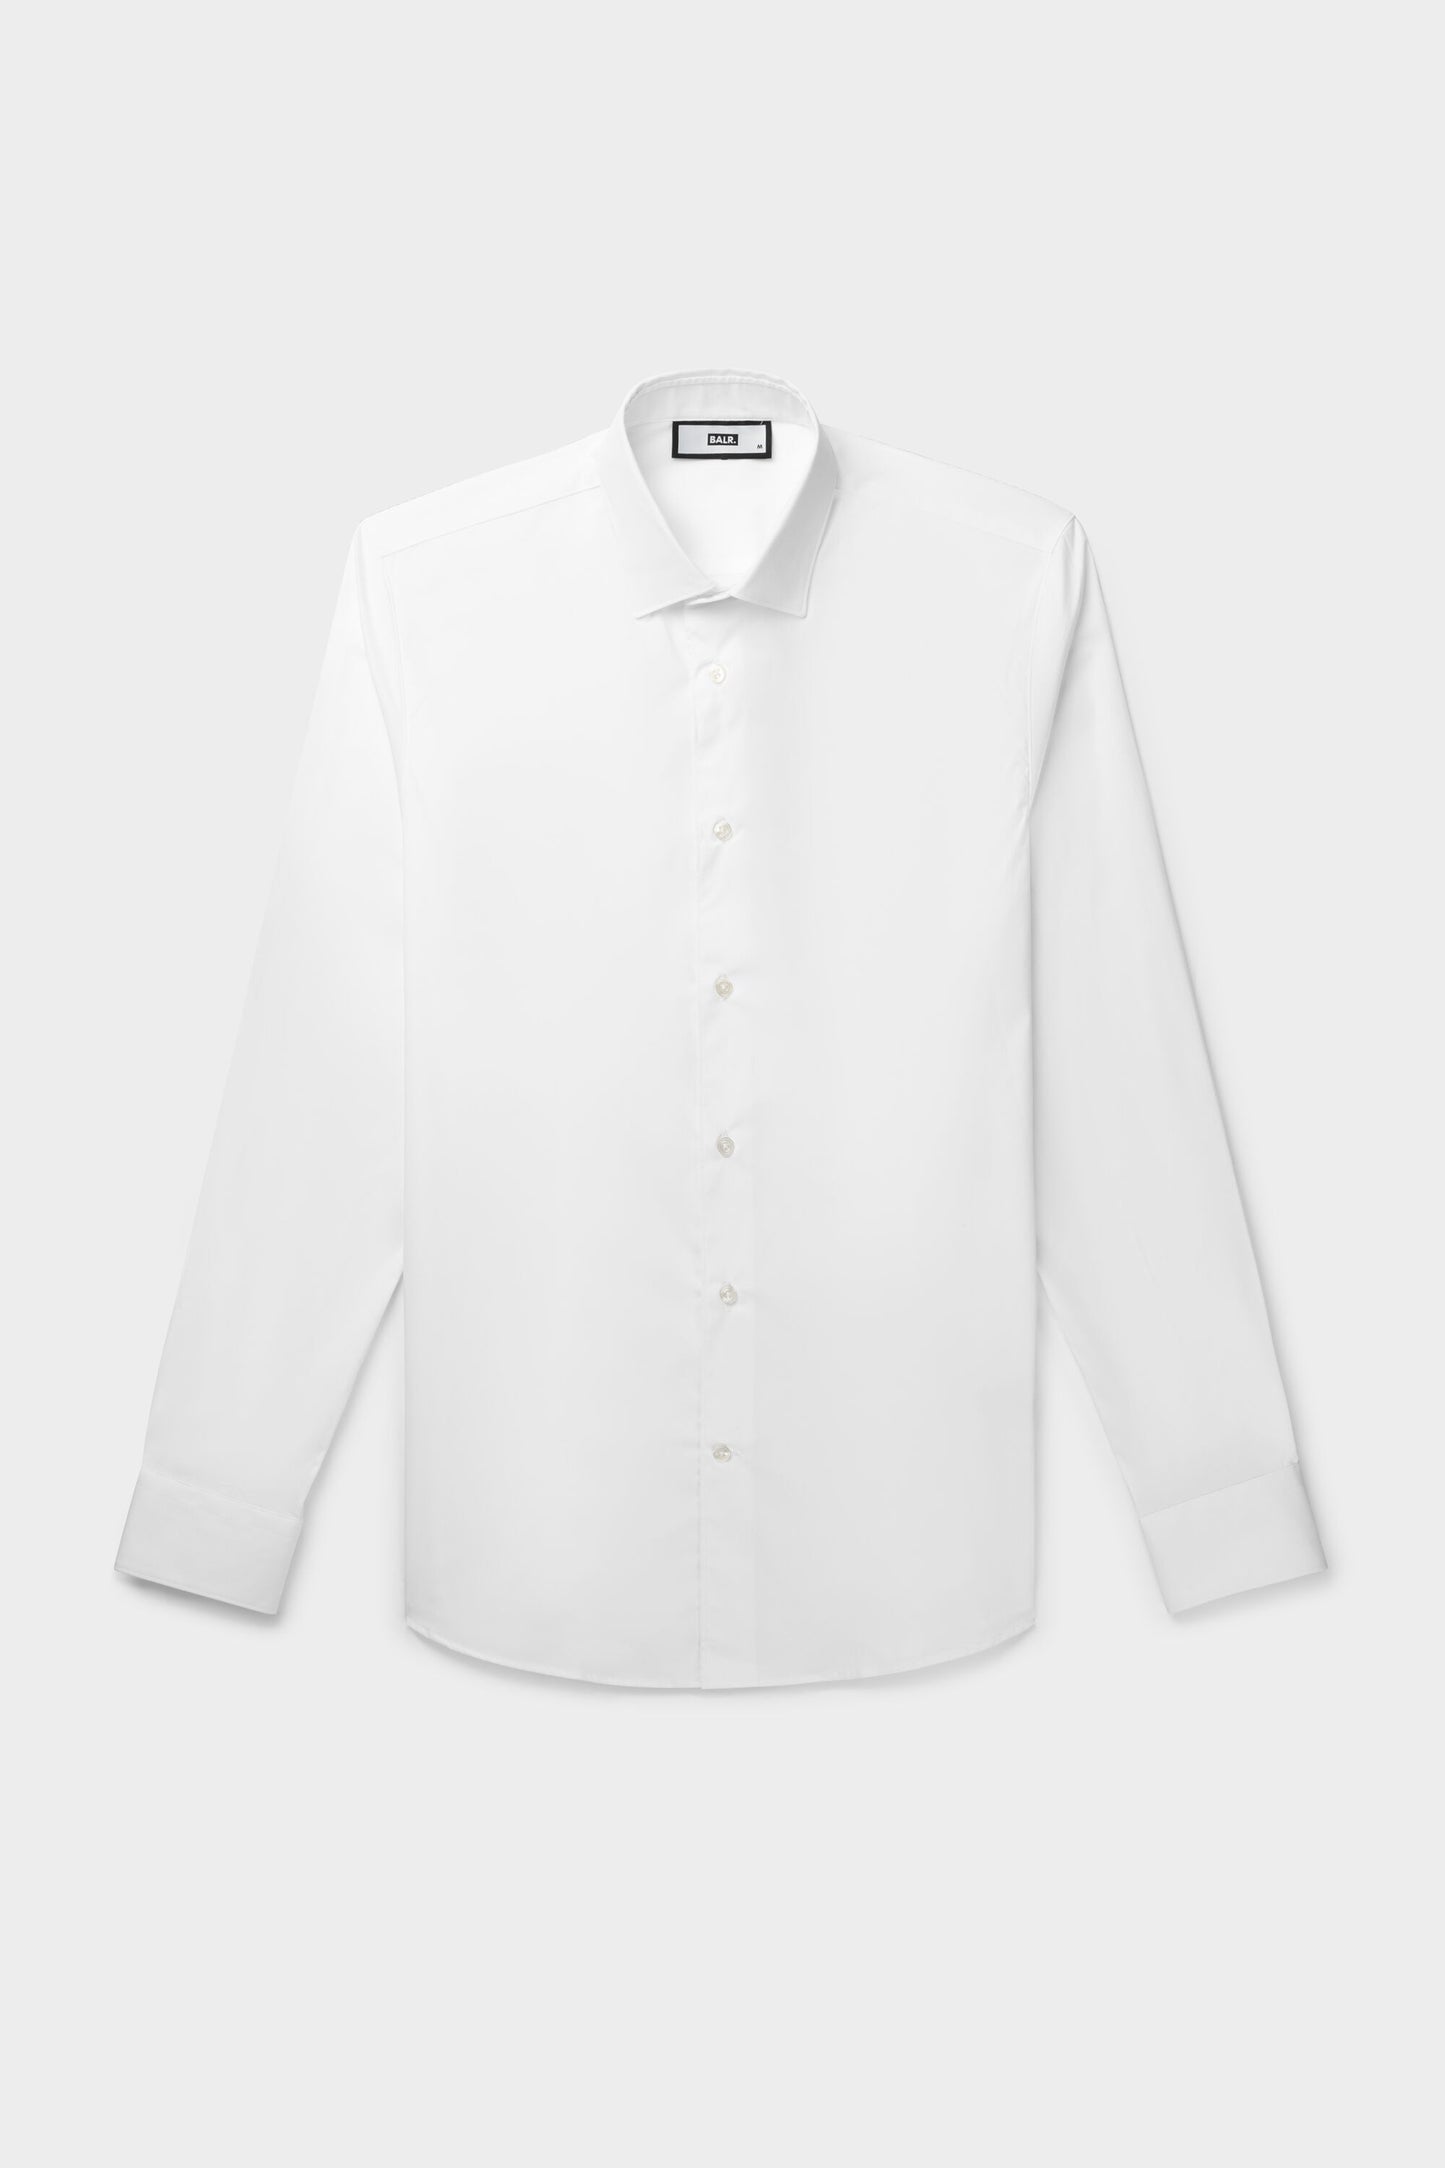 Philippe Slim Banks 2 Shirt Bright White